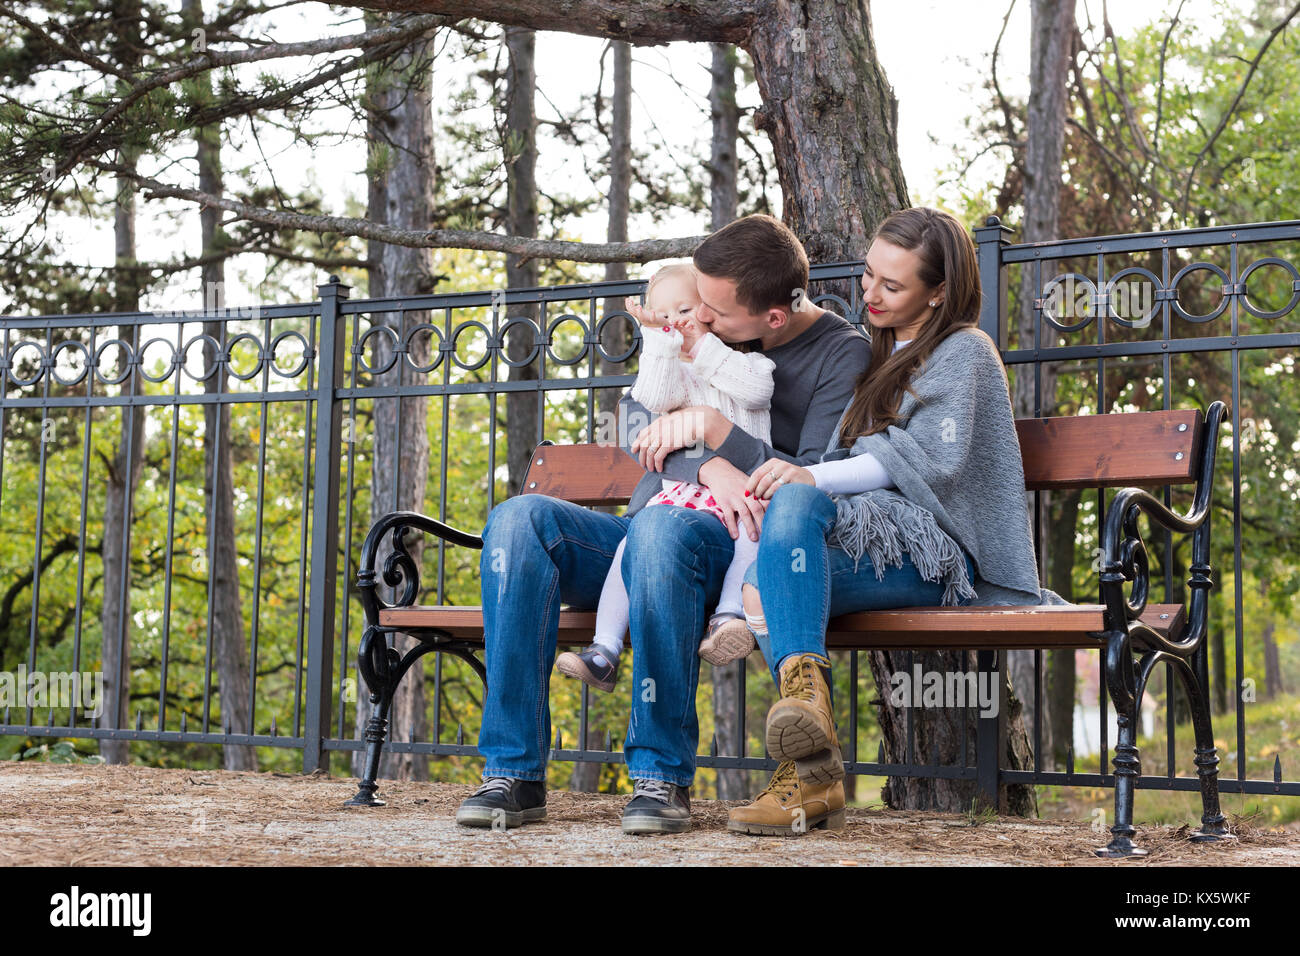 Glückliche Familie von drei sitzen auf einer Bank in einem Park ihre Zeit zusammen genießen. Vater einen Kuss zu seinem Kind Tochter, Mutter lächelnd. Stockfoto